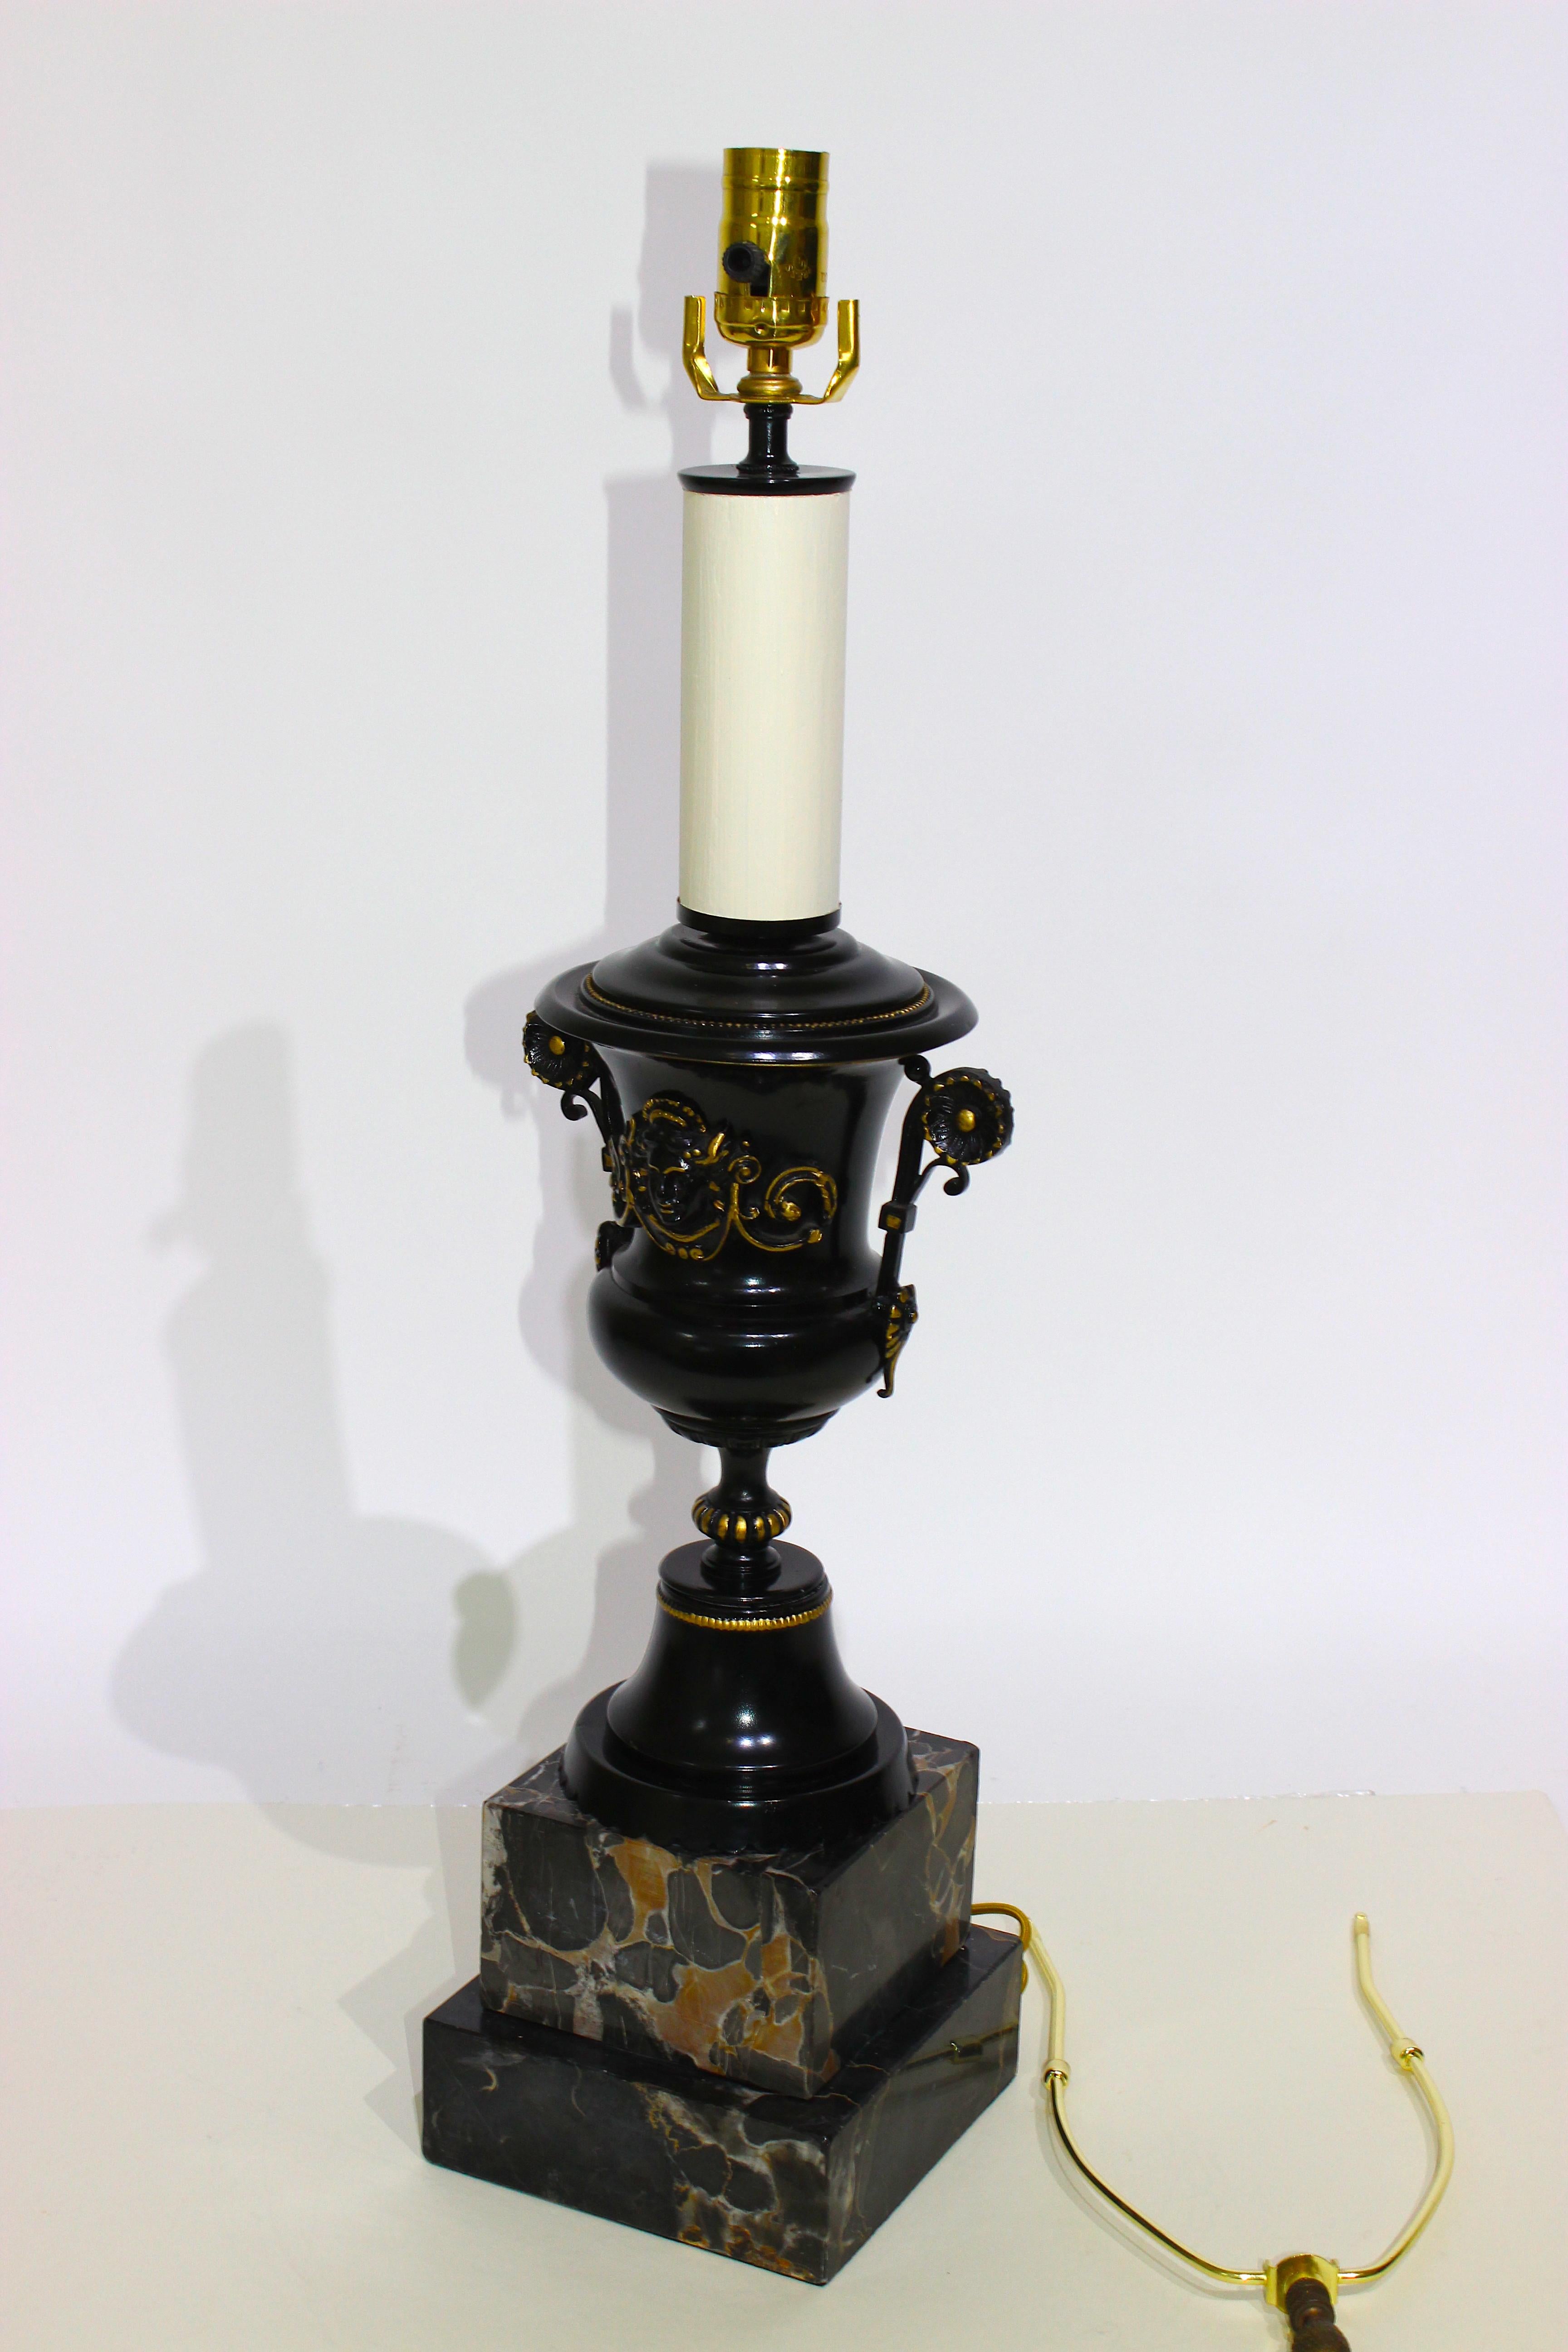 Cette lampe de table élégante et spectaculaire de style Renaissance date des années 1920-1930 et fera sensation avec sa finition noire émaillée.

Note : La hauteur jusqu'au sommet de la douille est de 26,25